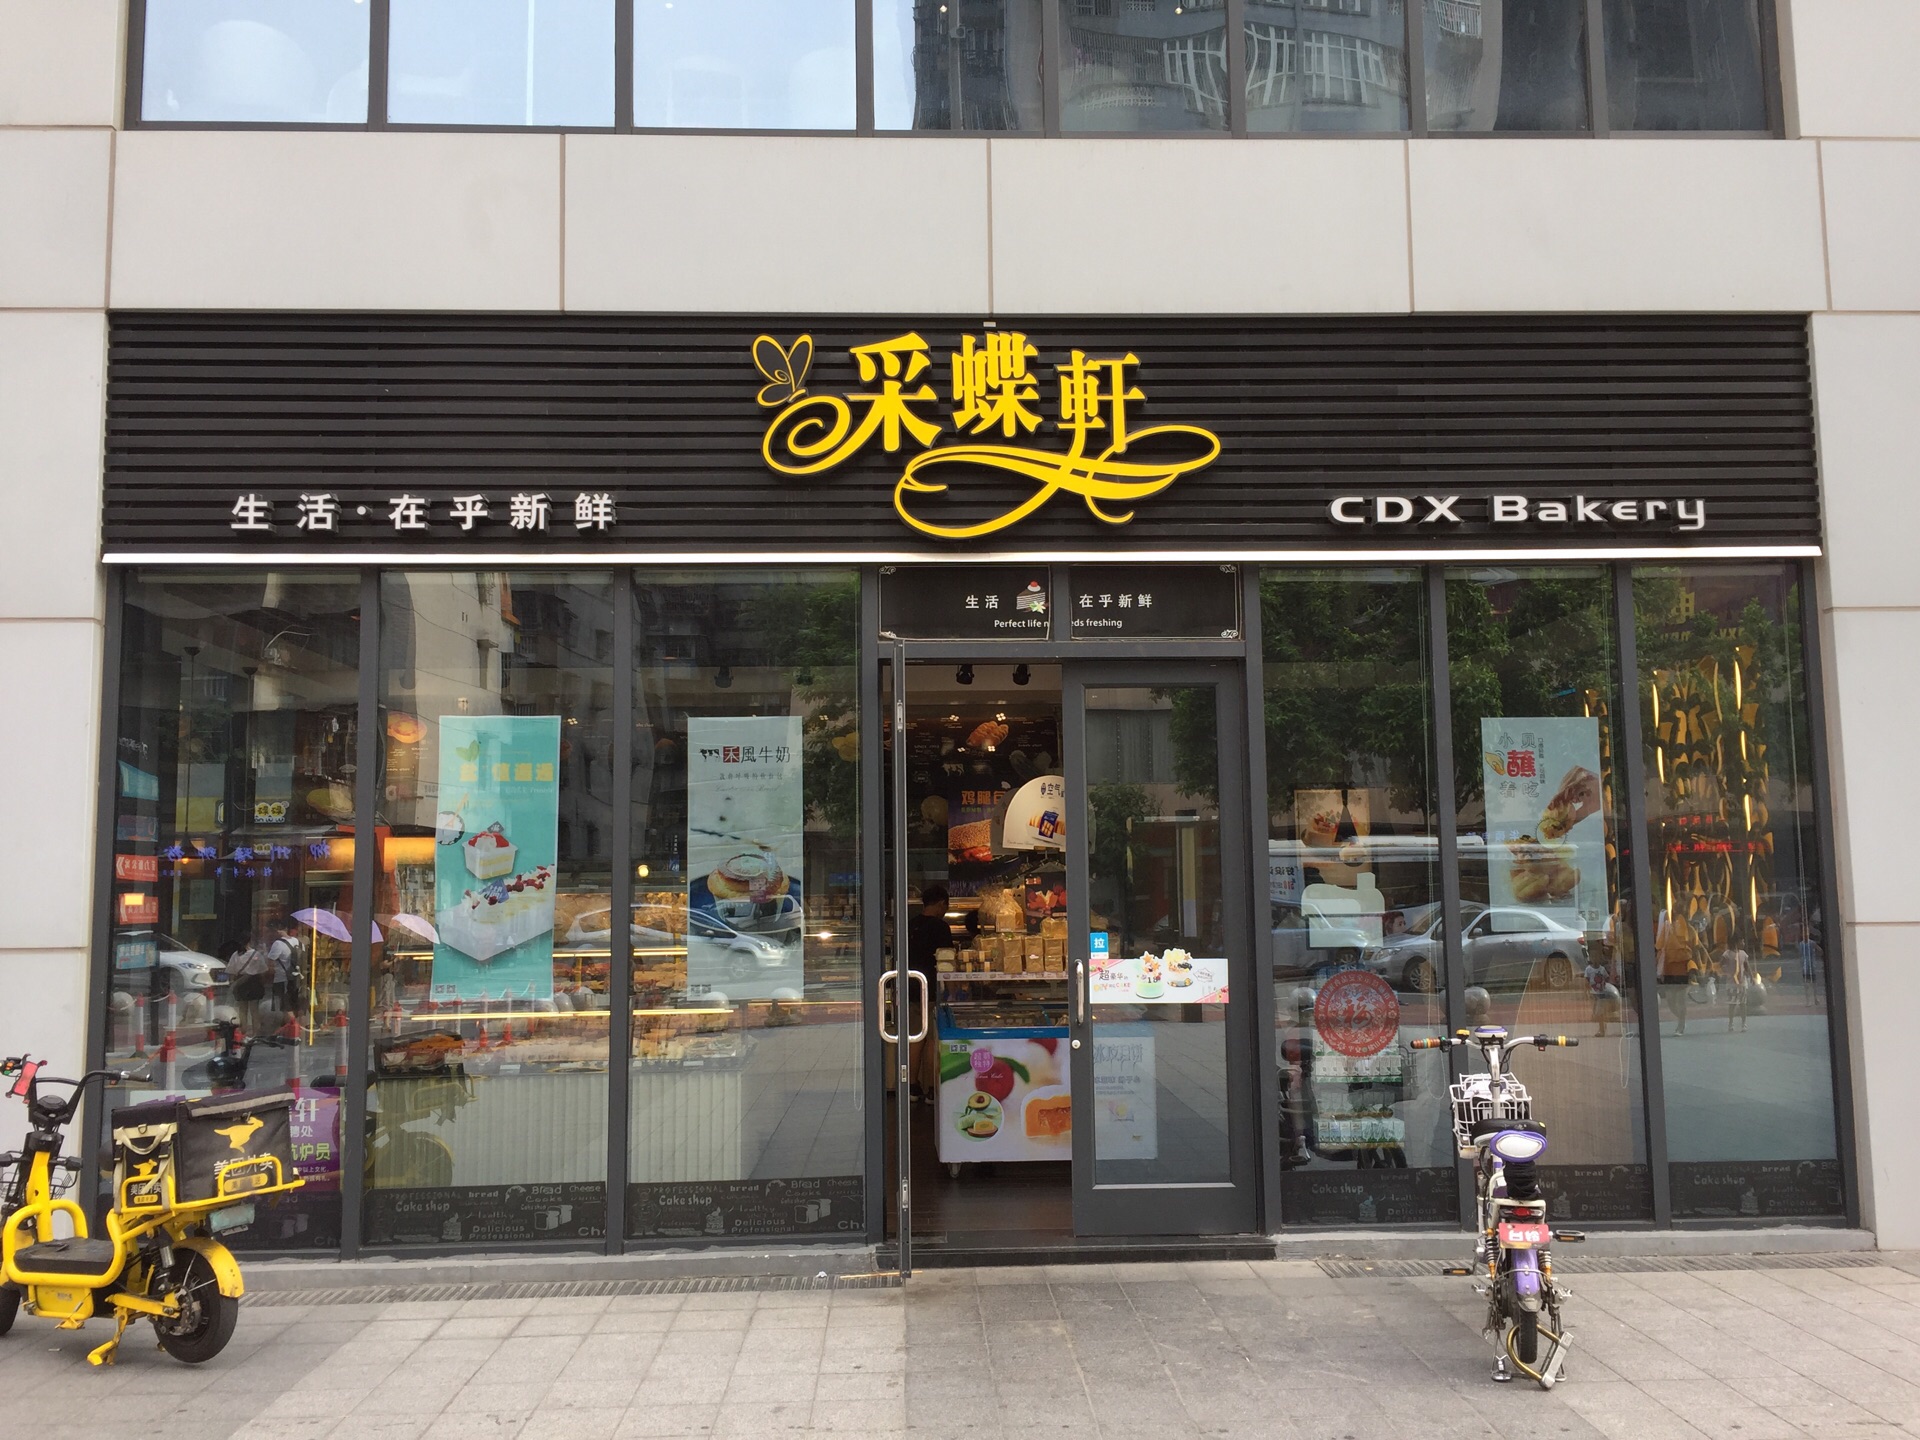 上海采蝶轩餐厅图片